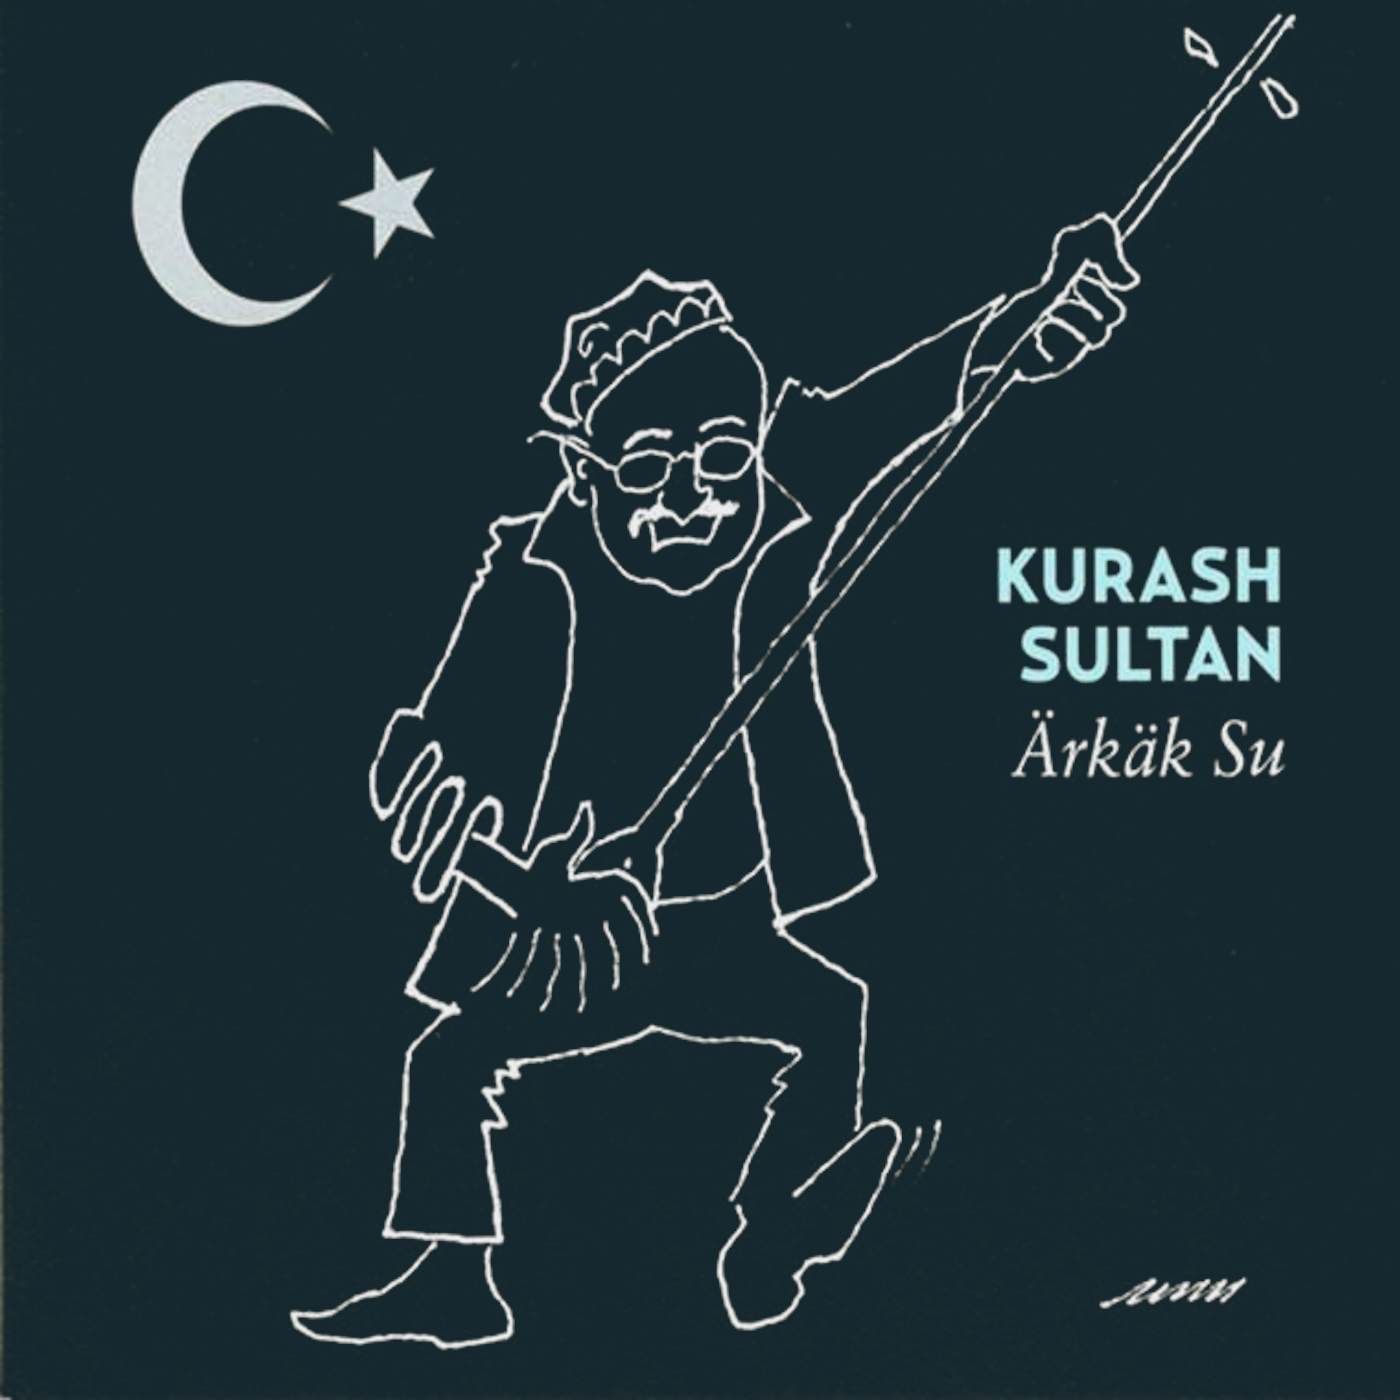 Kurash Sultan